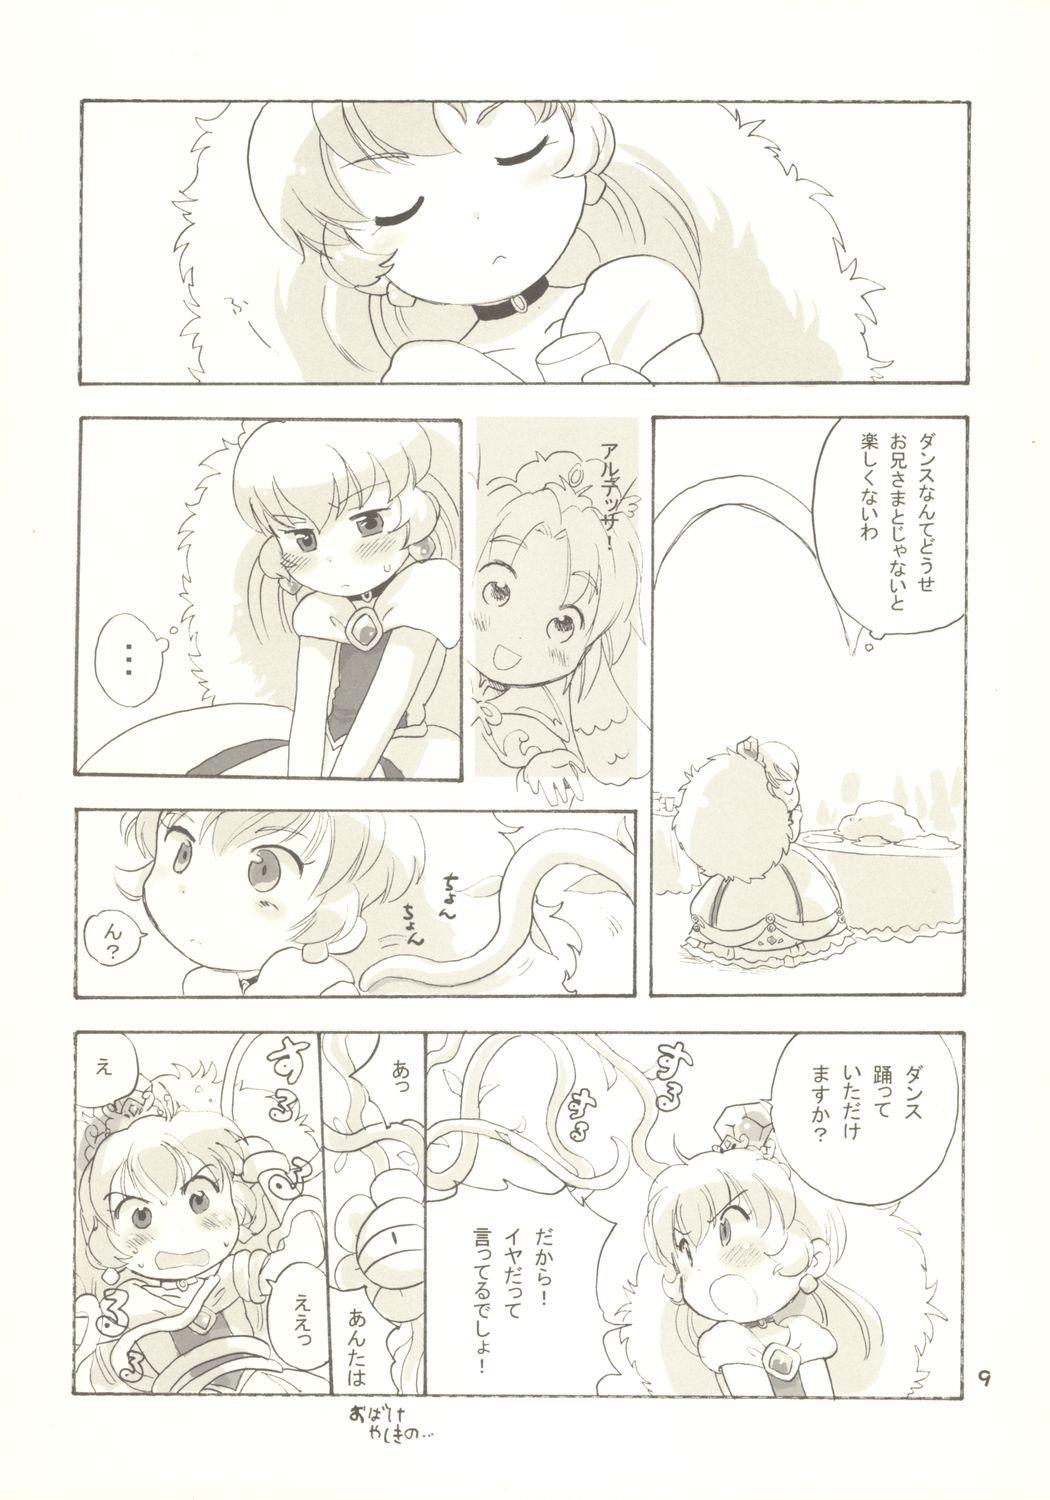 Assfingering Egao ni Nare - Please give me smiling face - Fushigiboshi no futagohime Swinger - Page 8